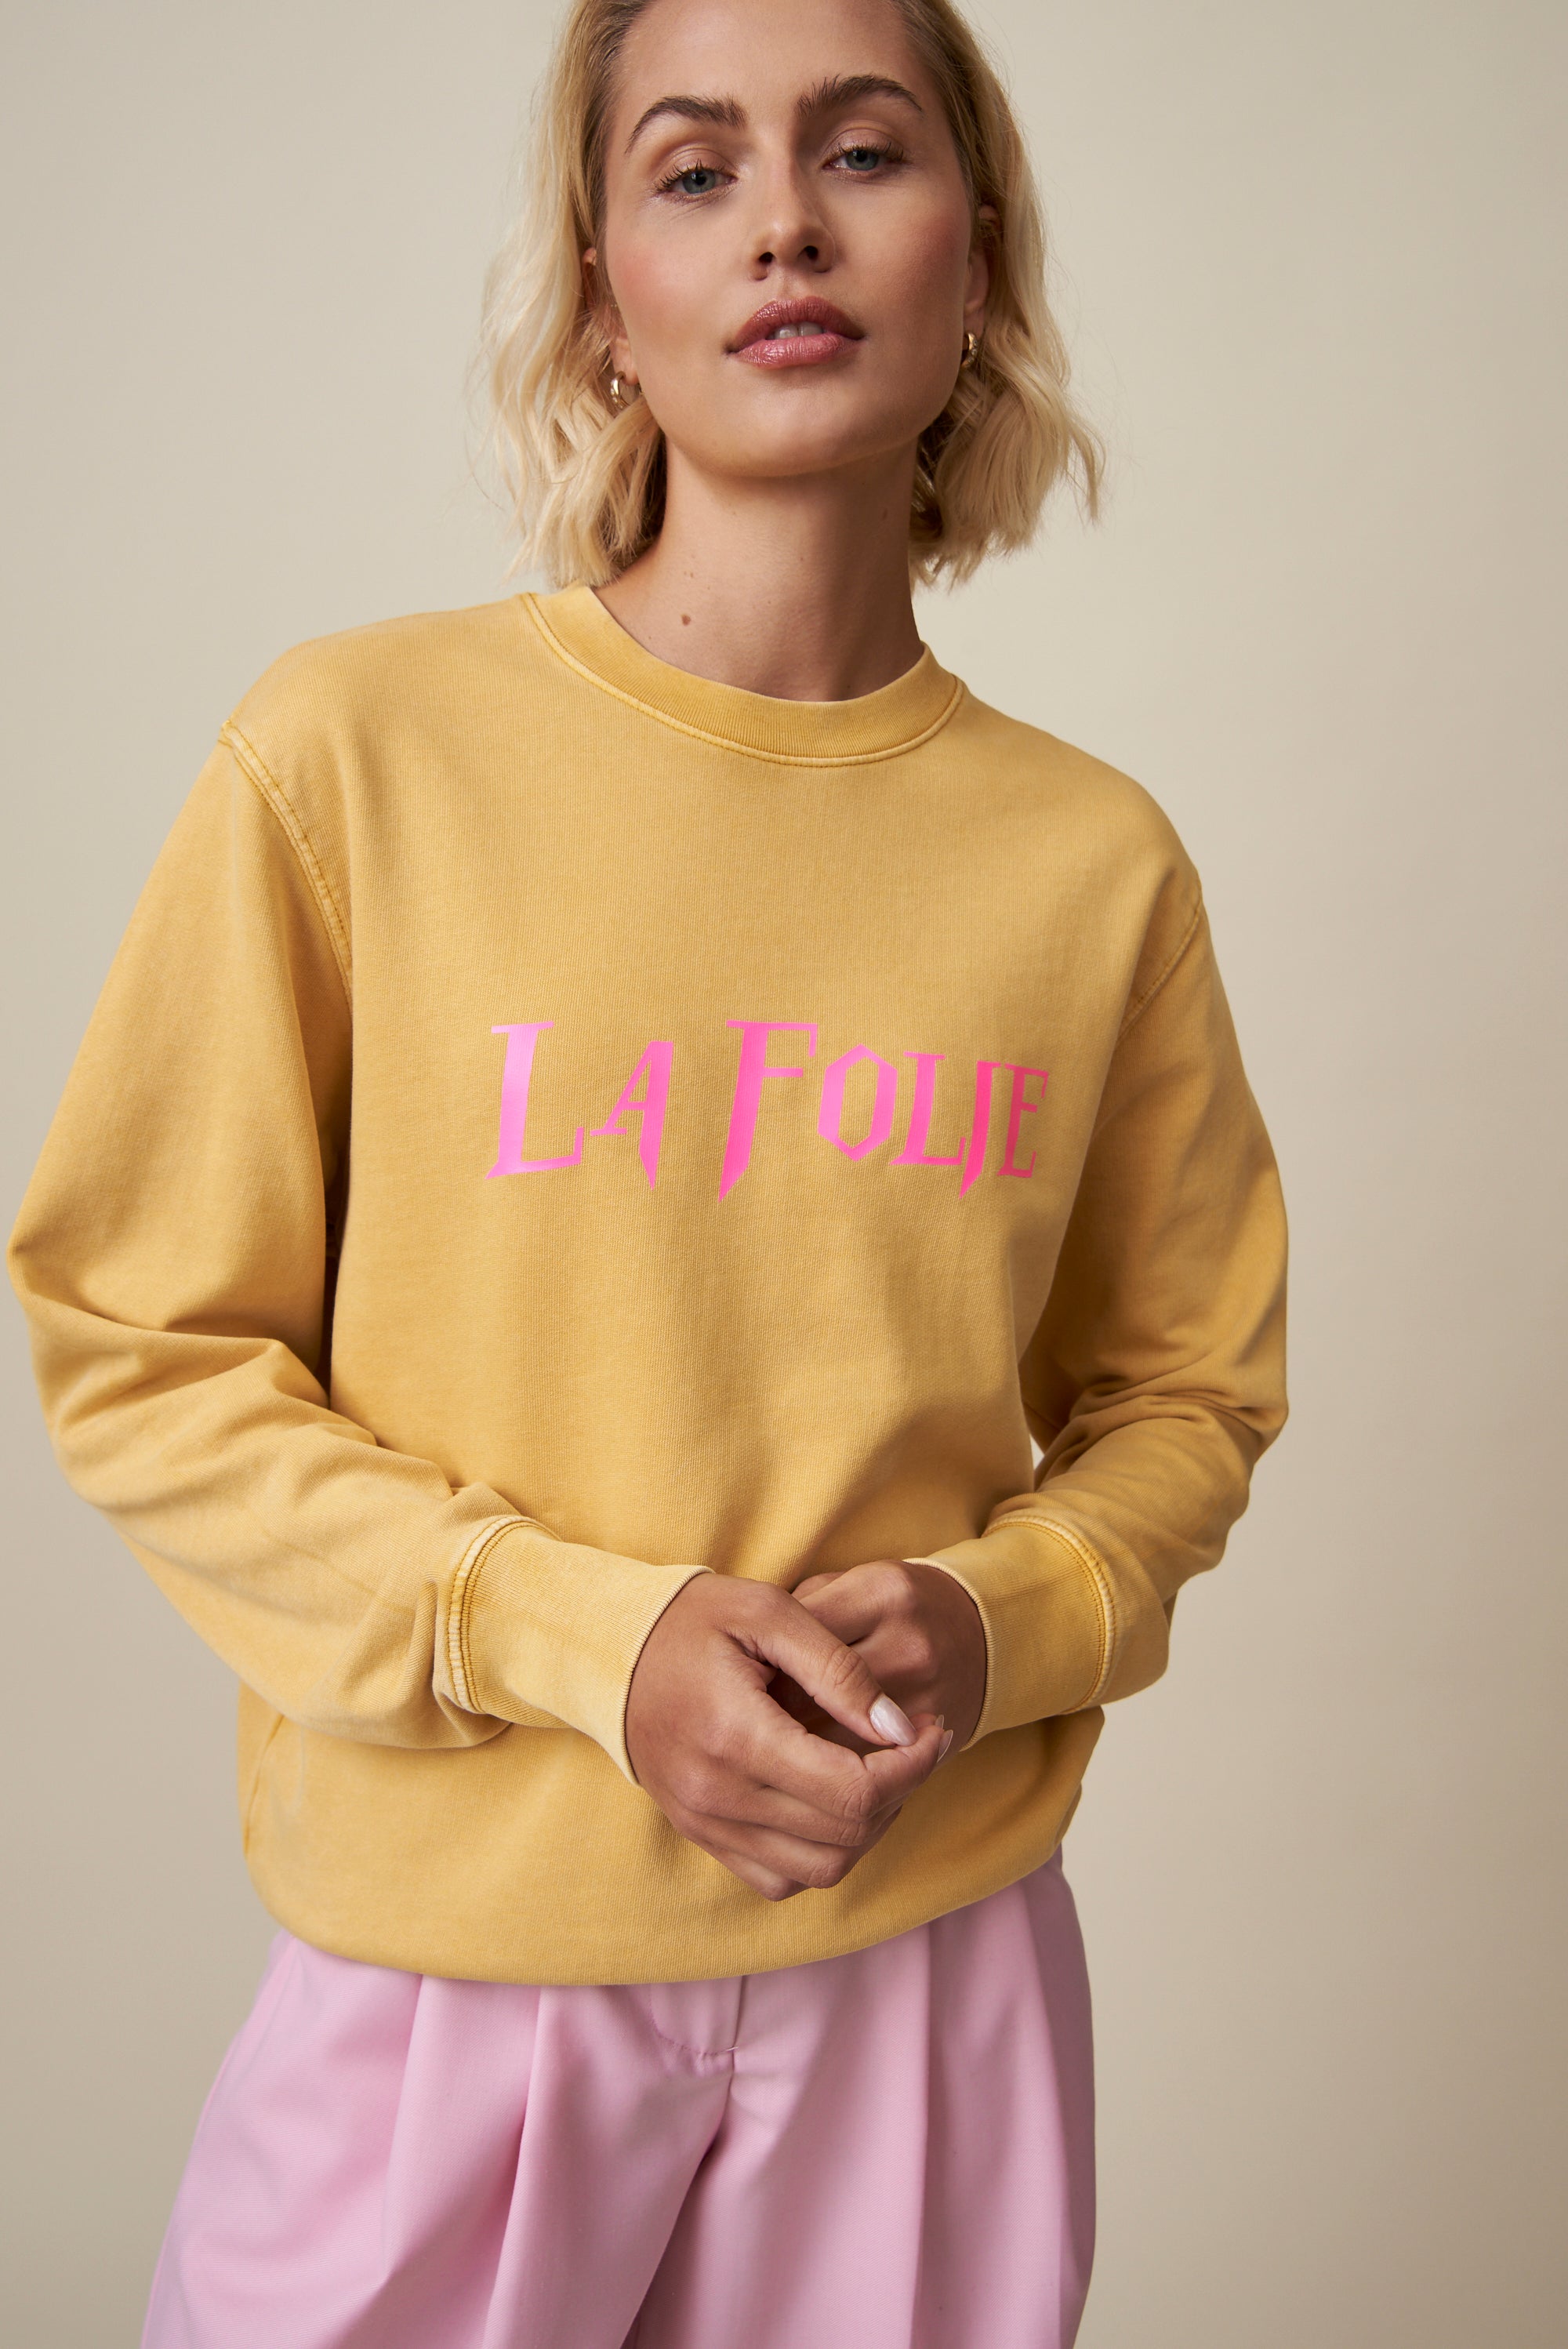 La Folie Sweatshirt - Ochre / Neon Pink